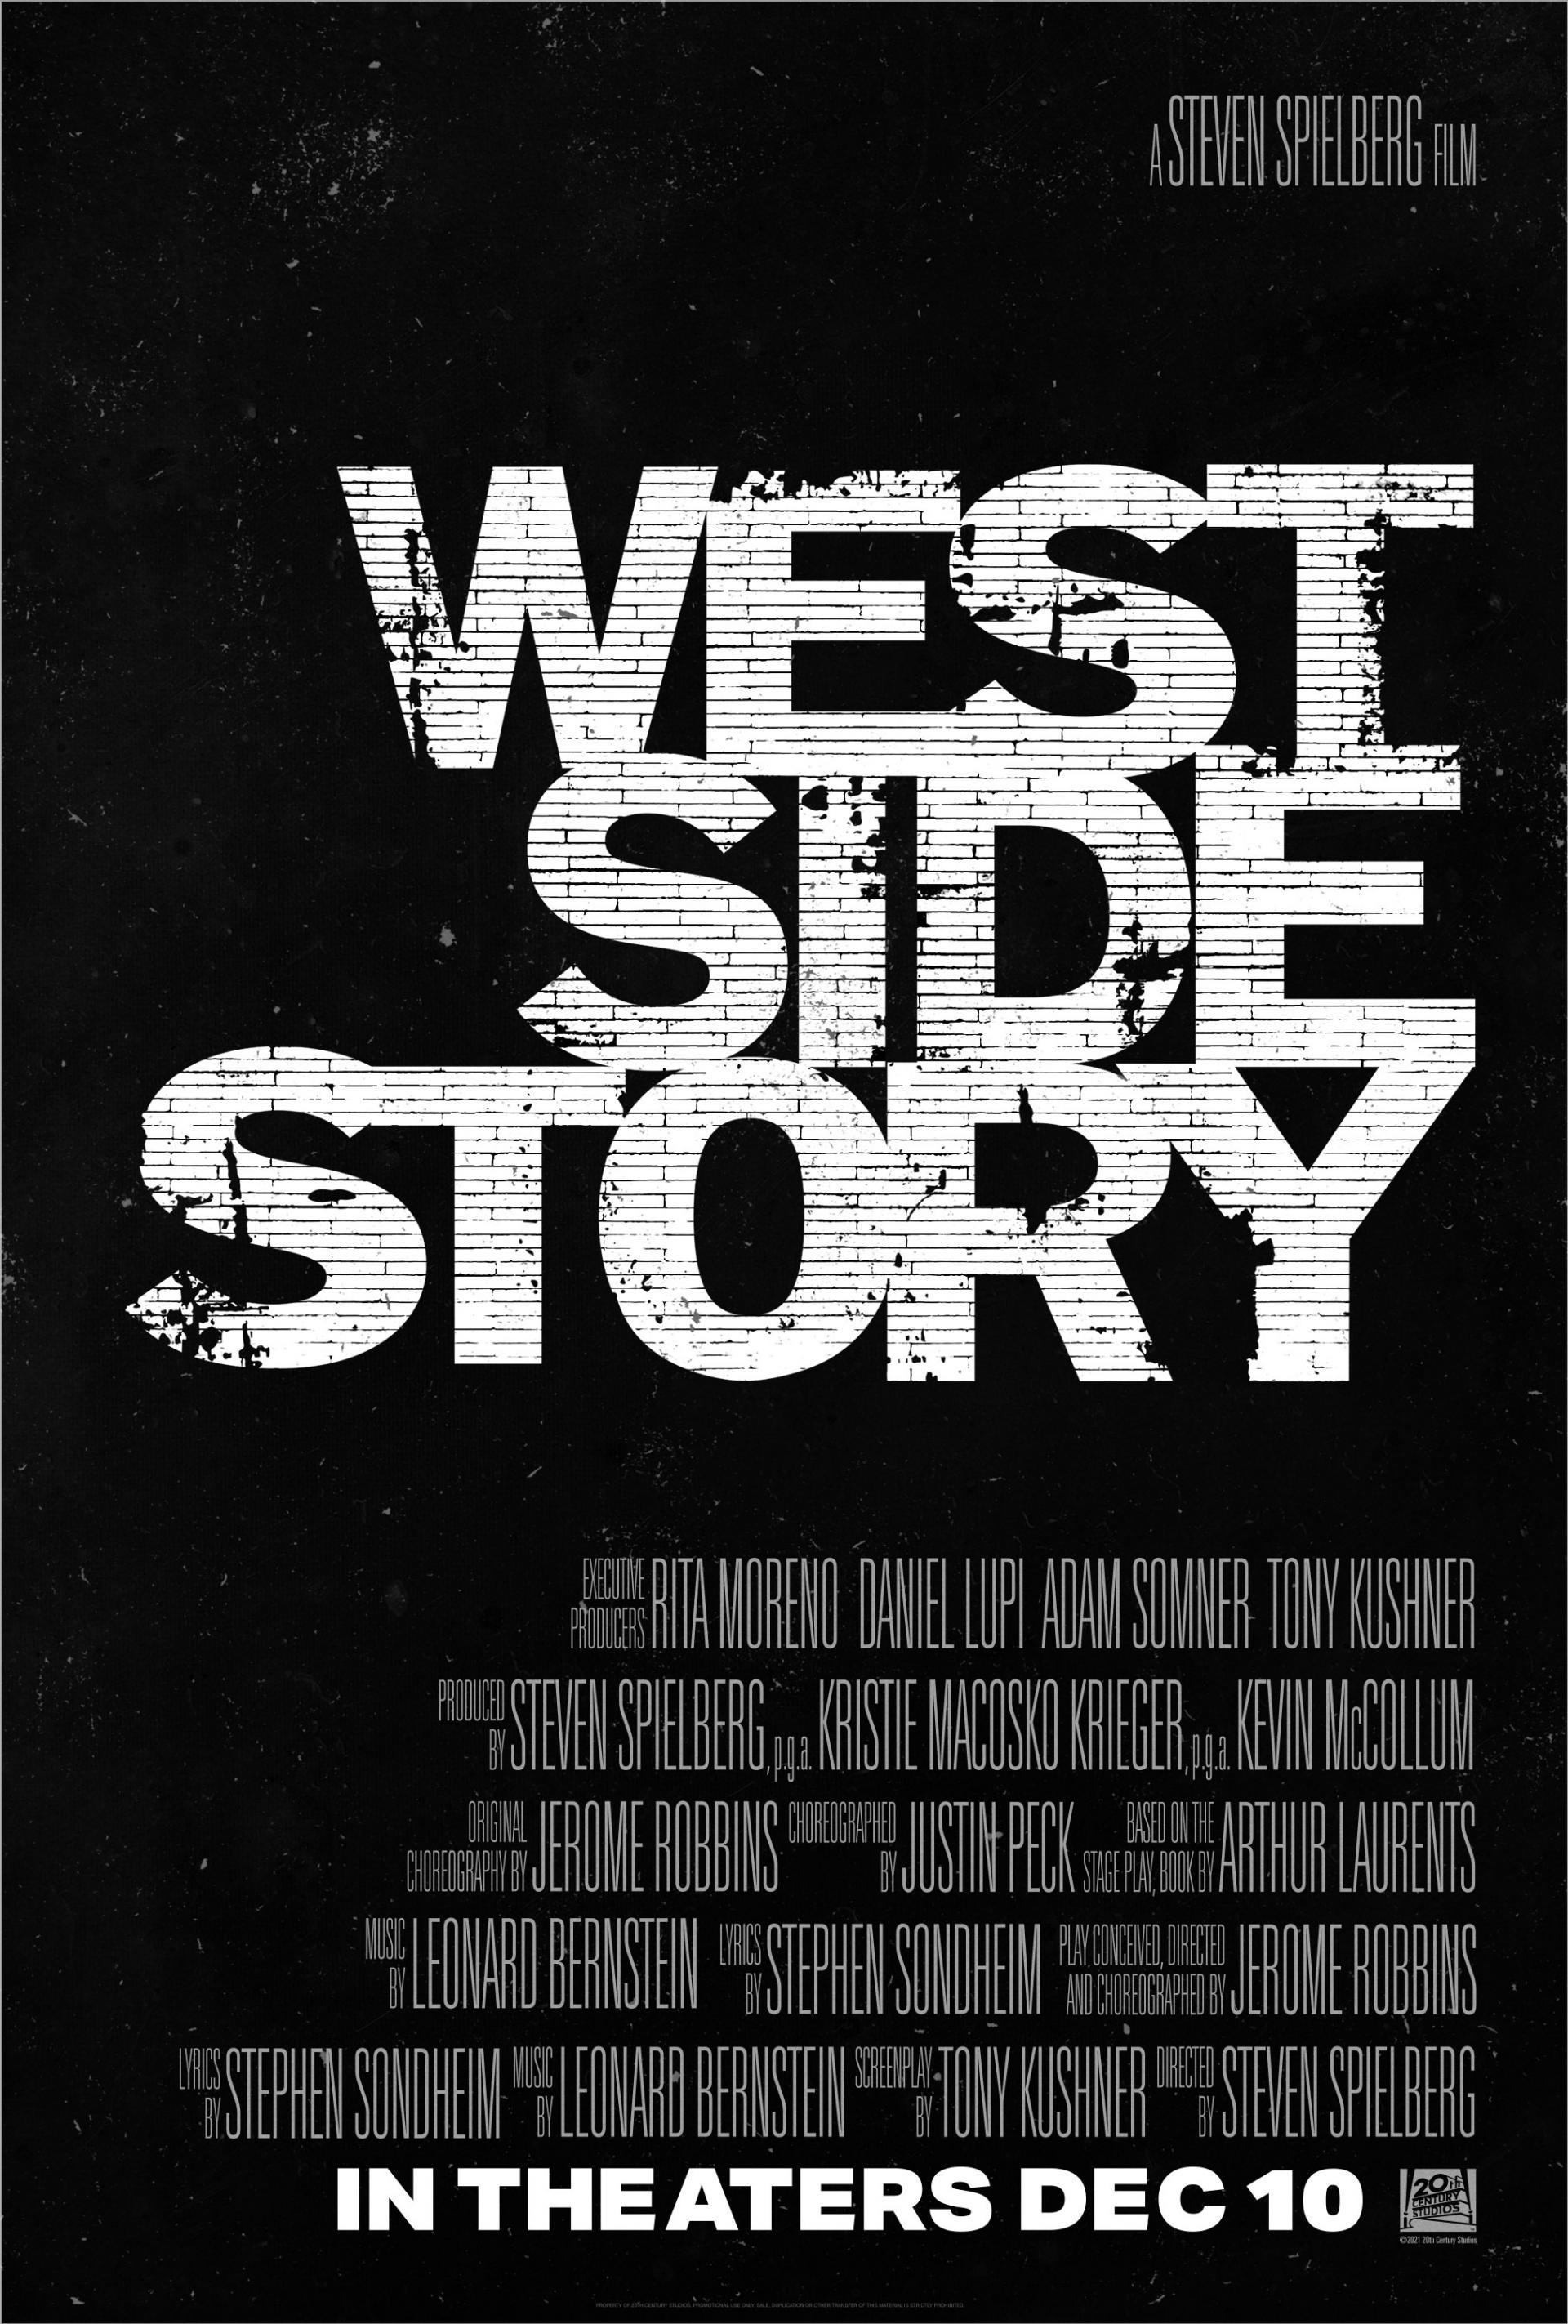 Постер фильма Вестсайдская история | West Side Story 